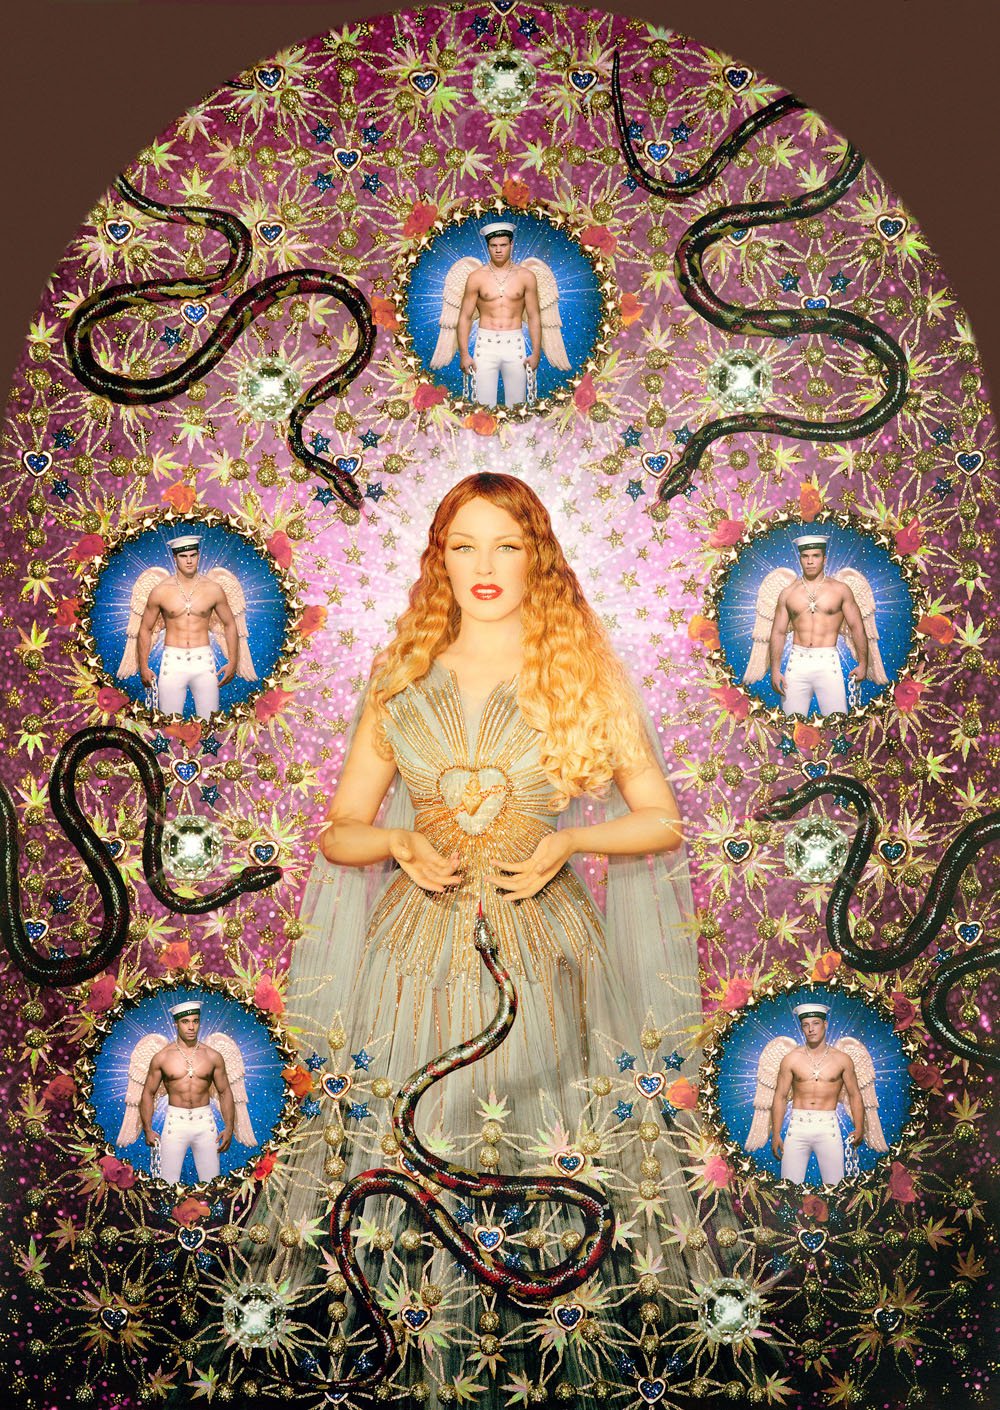 02 Jean Paul Gaultier, La Vierge aux serpents (Kylie Minogue), 2008, foto Pierre et Gilles.jpg